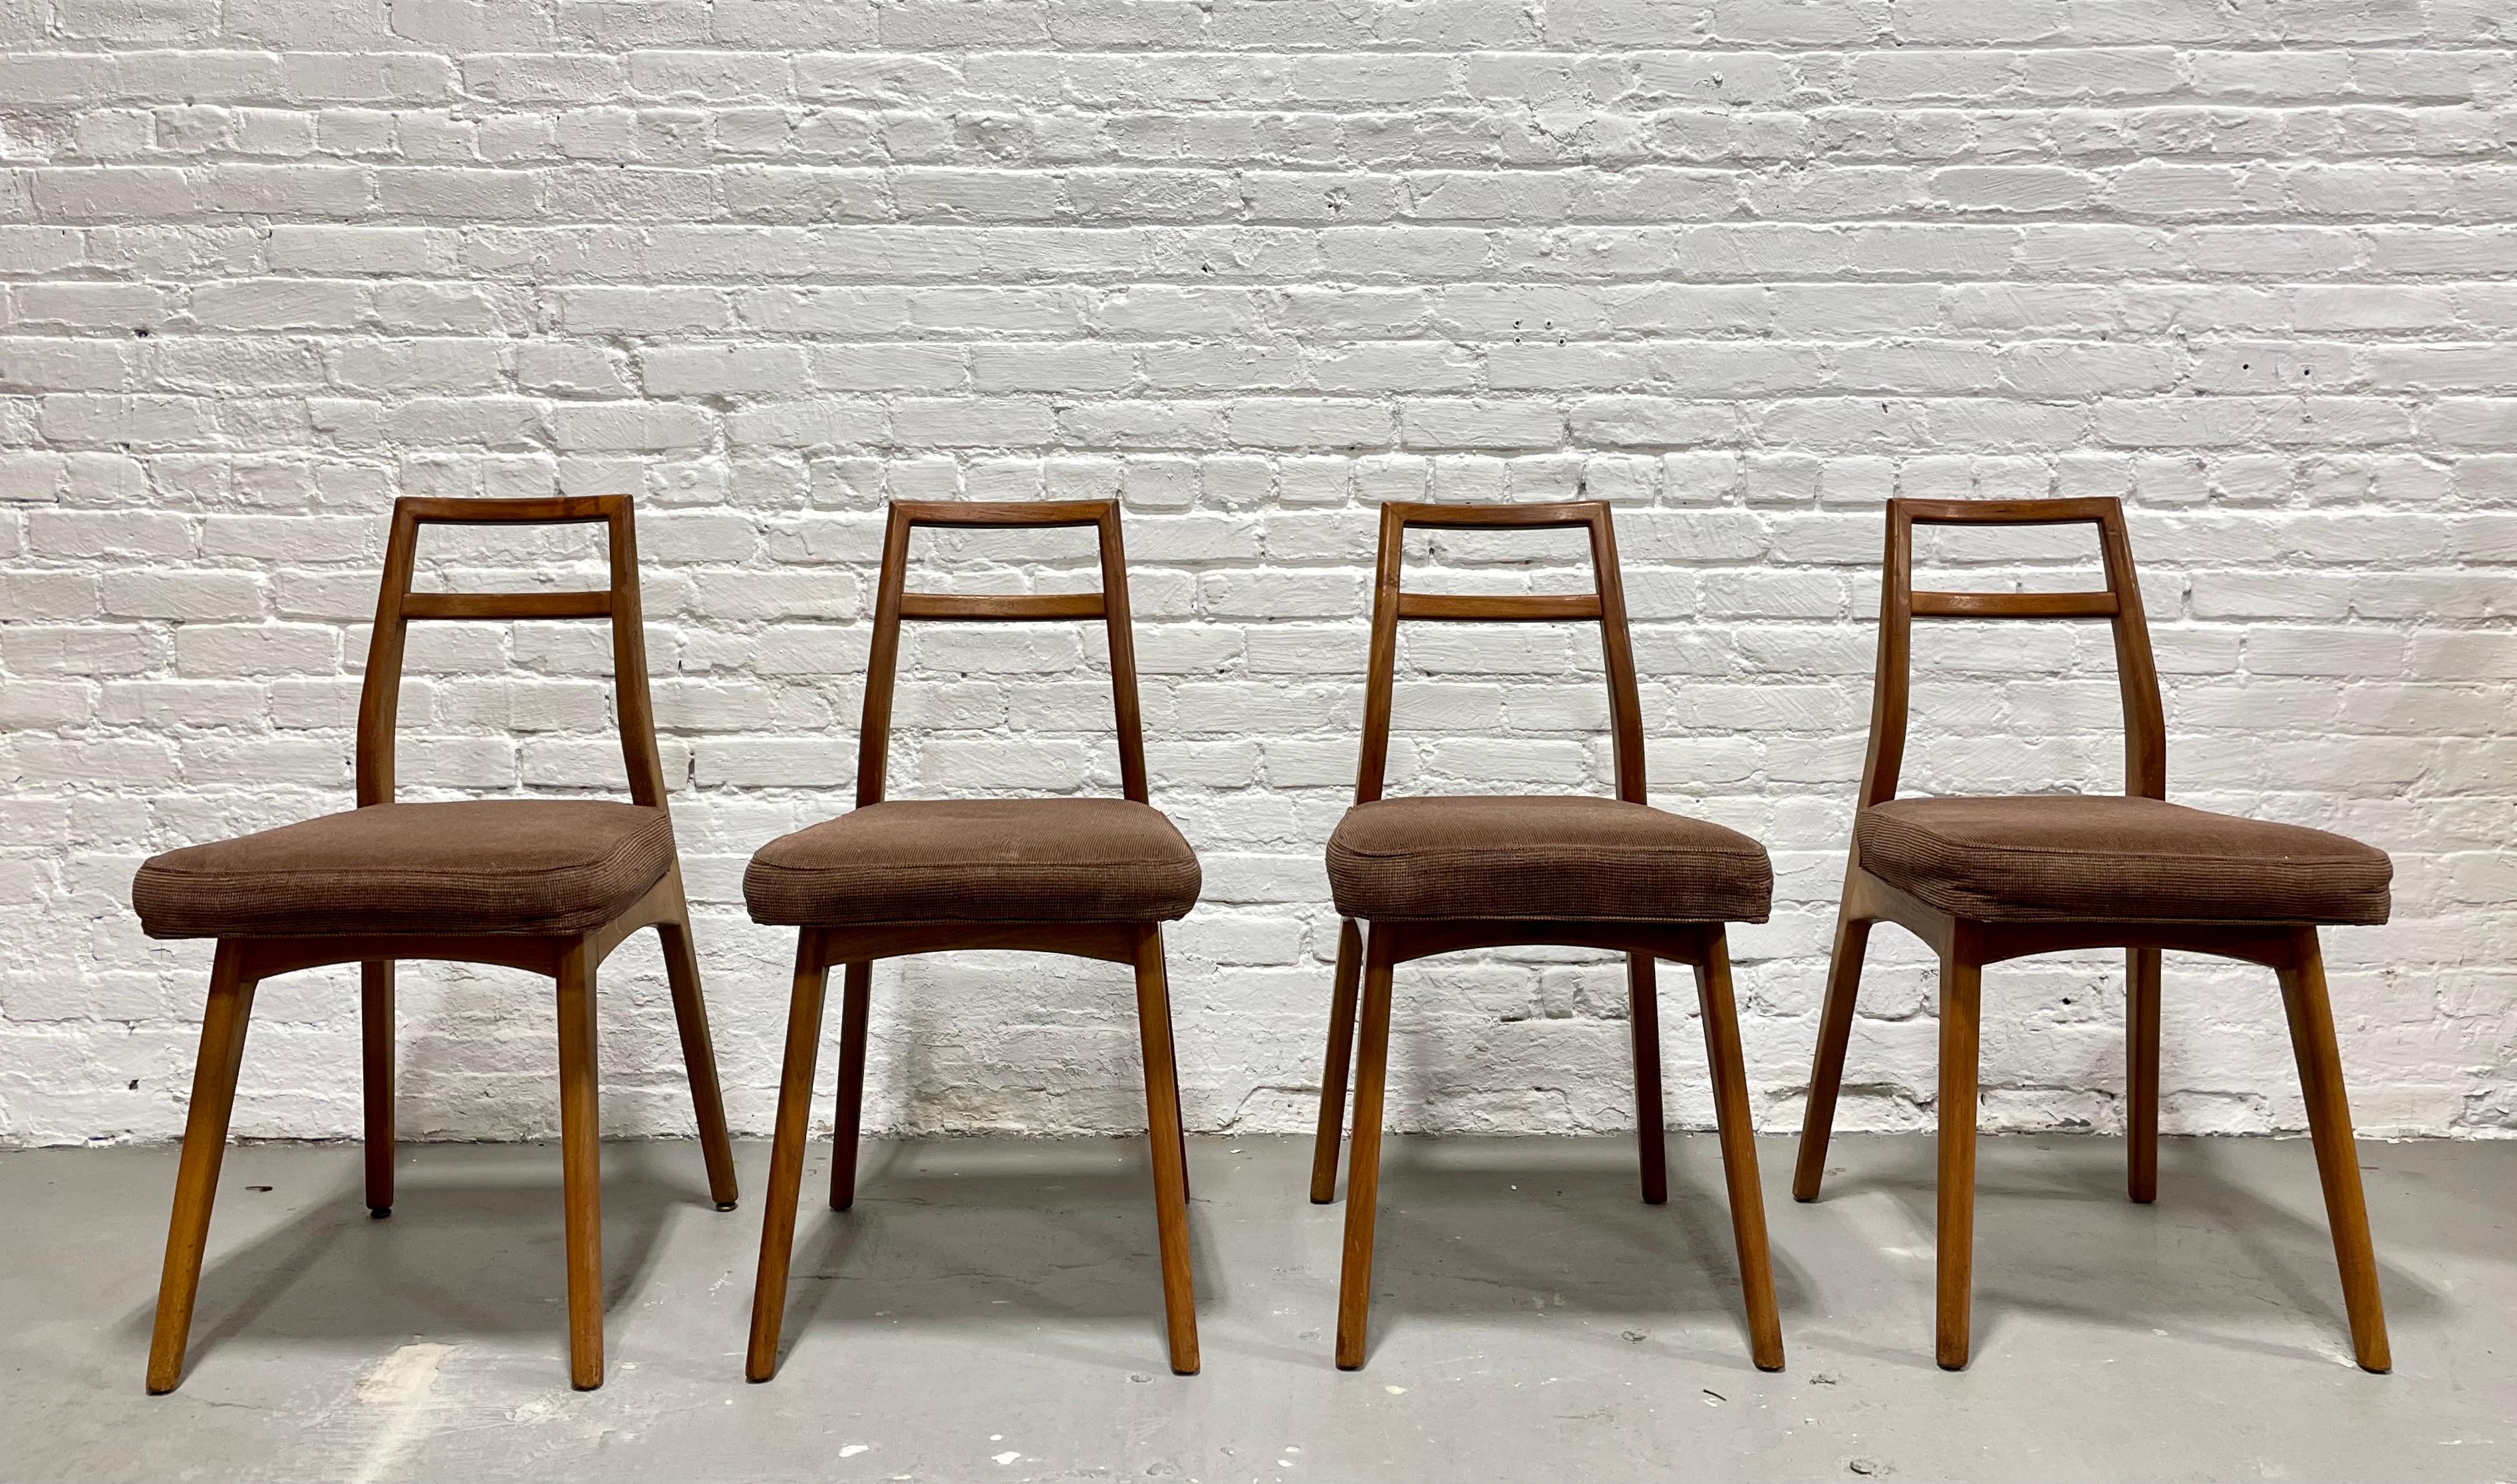 Mid Century Modern Dining Chairs von Mel Smilow, Vierer-Set.  Die Gestelle haben sch�öne skulpturale Rückenlehnen und schwebende Sitze.   Der schwebende Sitz verleiht dem Gestell einen Hauch von Leichtigkeit und Eleganz. Die Stühle wurden gereinigt